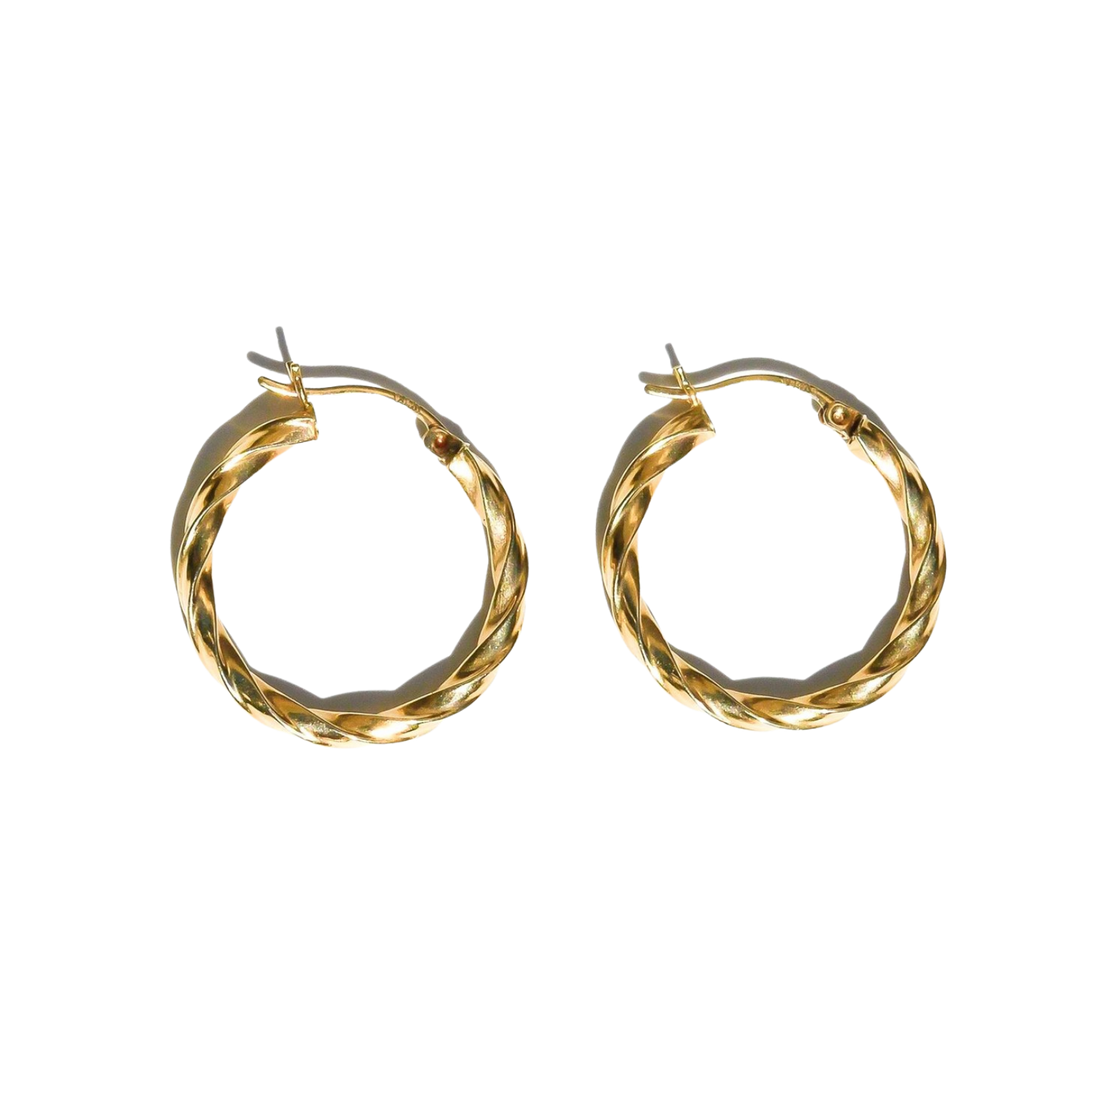 gold twisted hoop earrings, solid gold hoop earrings, gold earrings, twisted 10k hoop earrings